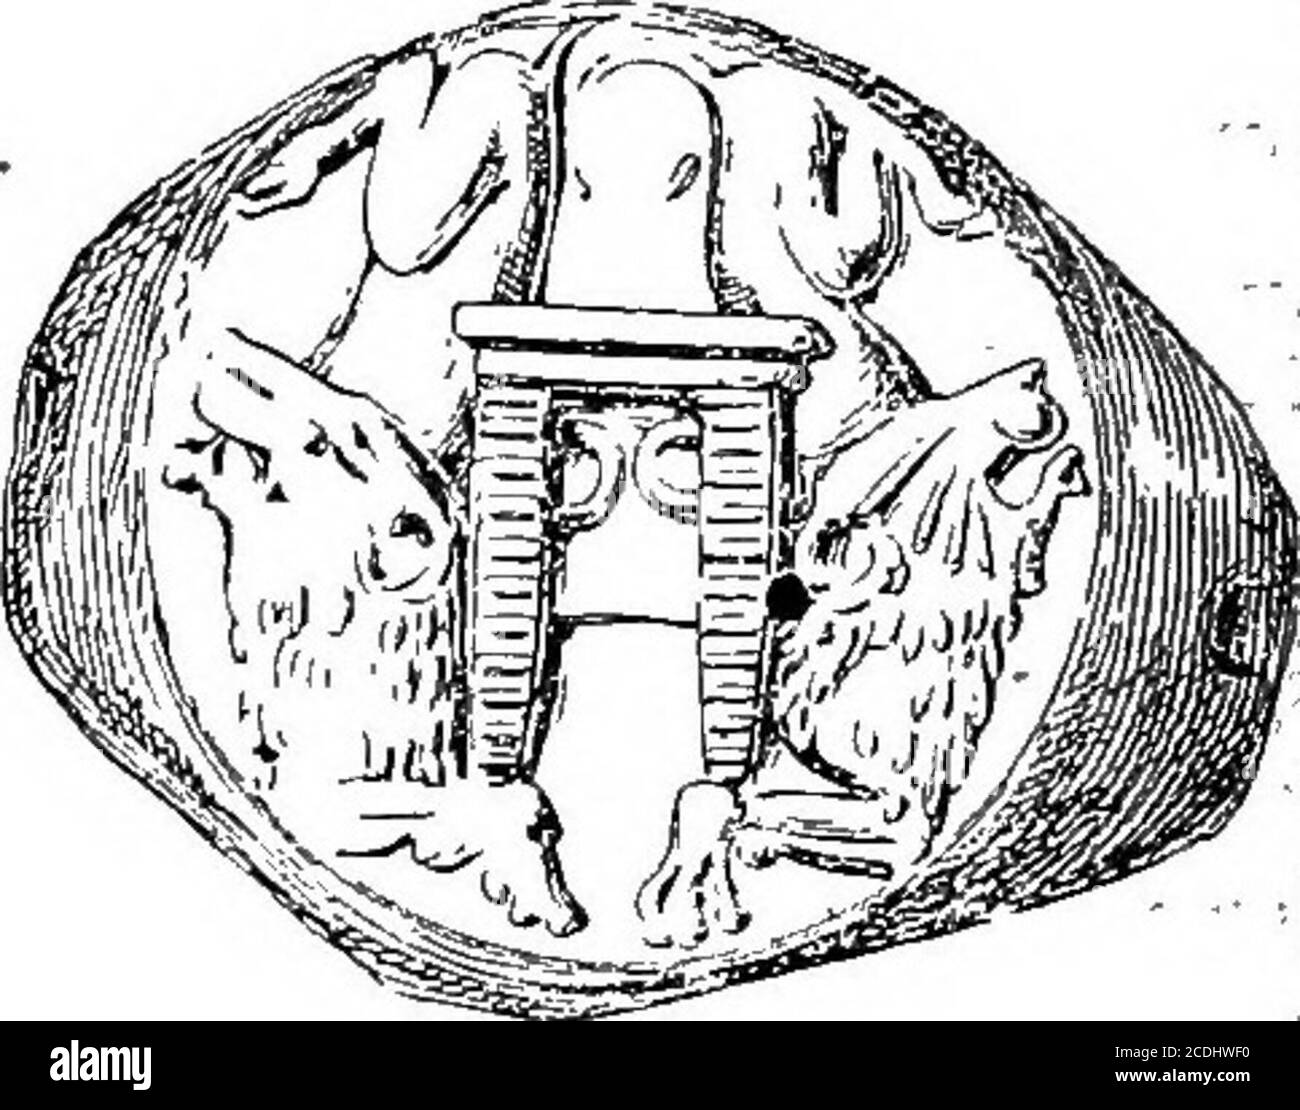 . Le palais de Minos : un compte-rendu comparatif des étapes successives de la civilisation crétoise ancienne comme illustré par les découvertes de Knossos . Figure 227, a, b, c. Scellement de Zakro montrant le bâtiment coulé (a) etFAyADE et le portail du sanctuaire (3, c).- (f) TownMosaicParent de LargerComposi-tion. Warriors. Qu'un sanctuaire avec les cornes sacrales est visible sur un mur extérieur de la construction de Minoan.^ des nombreux fragments trouvés de ces plaques architecturales, il semble probable qu'ils aient formé une partie d'une mosaïque représentant une ville con-sidable. Cela apparaît en outre Banque D'Images